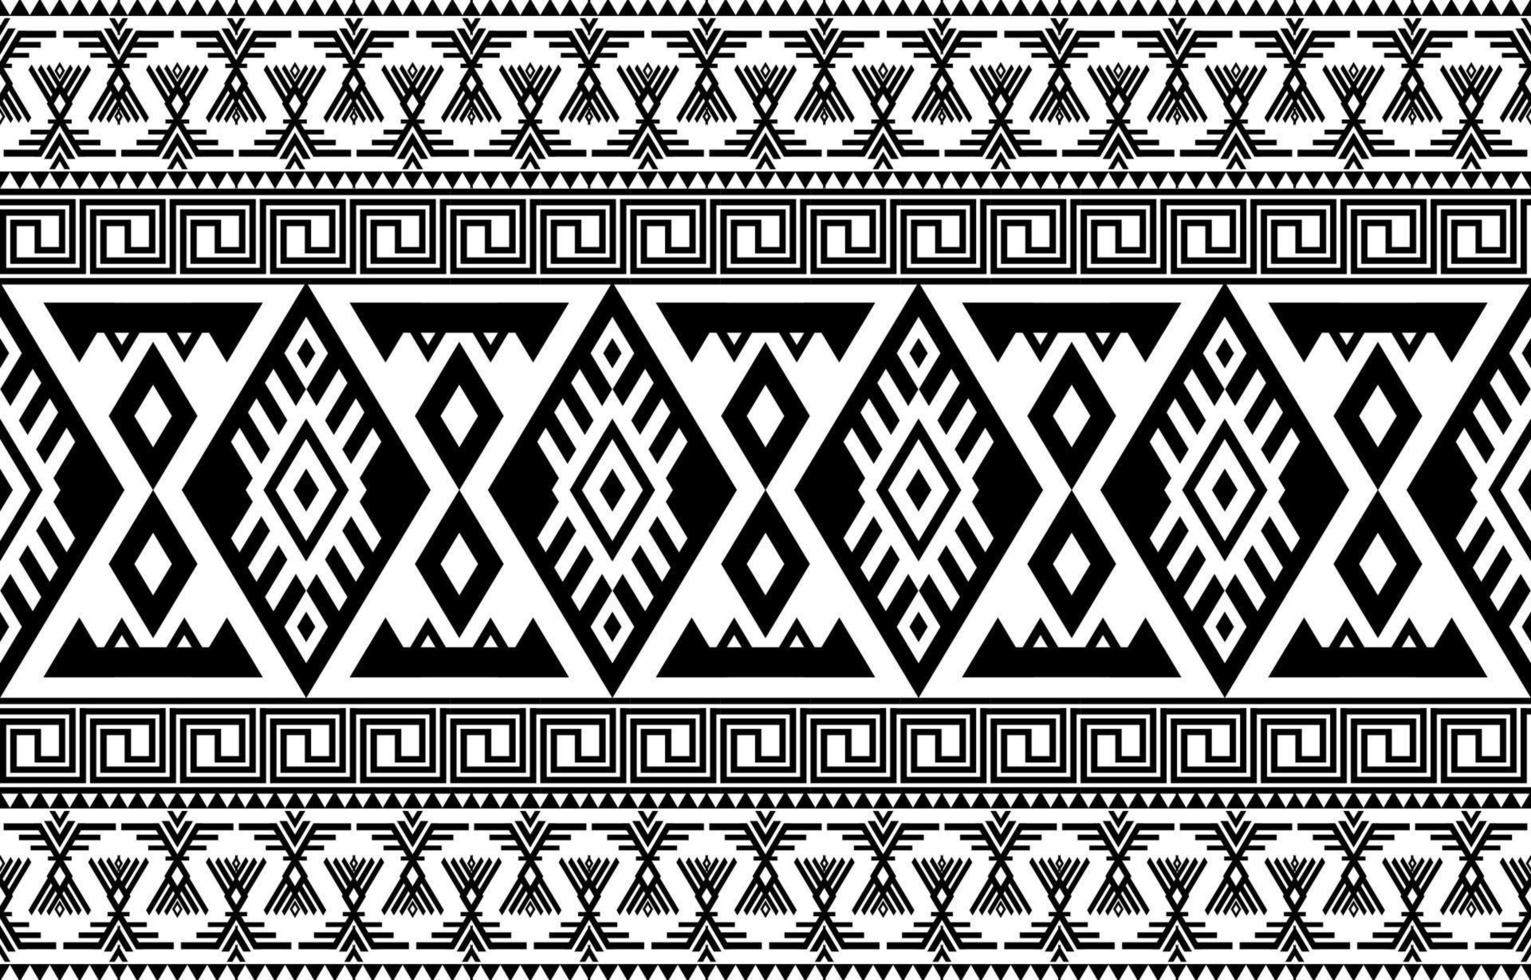 padrão sem emenda tribal ikat. ornamento de mandala de tapete de tecido étnico asteca nativo boho chevron têxtil. tradicional oriental geométrica. fundo bordado abstrato. vetor